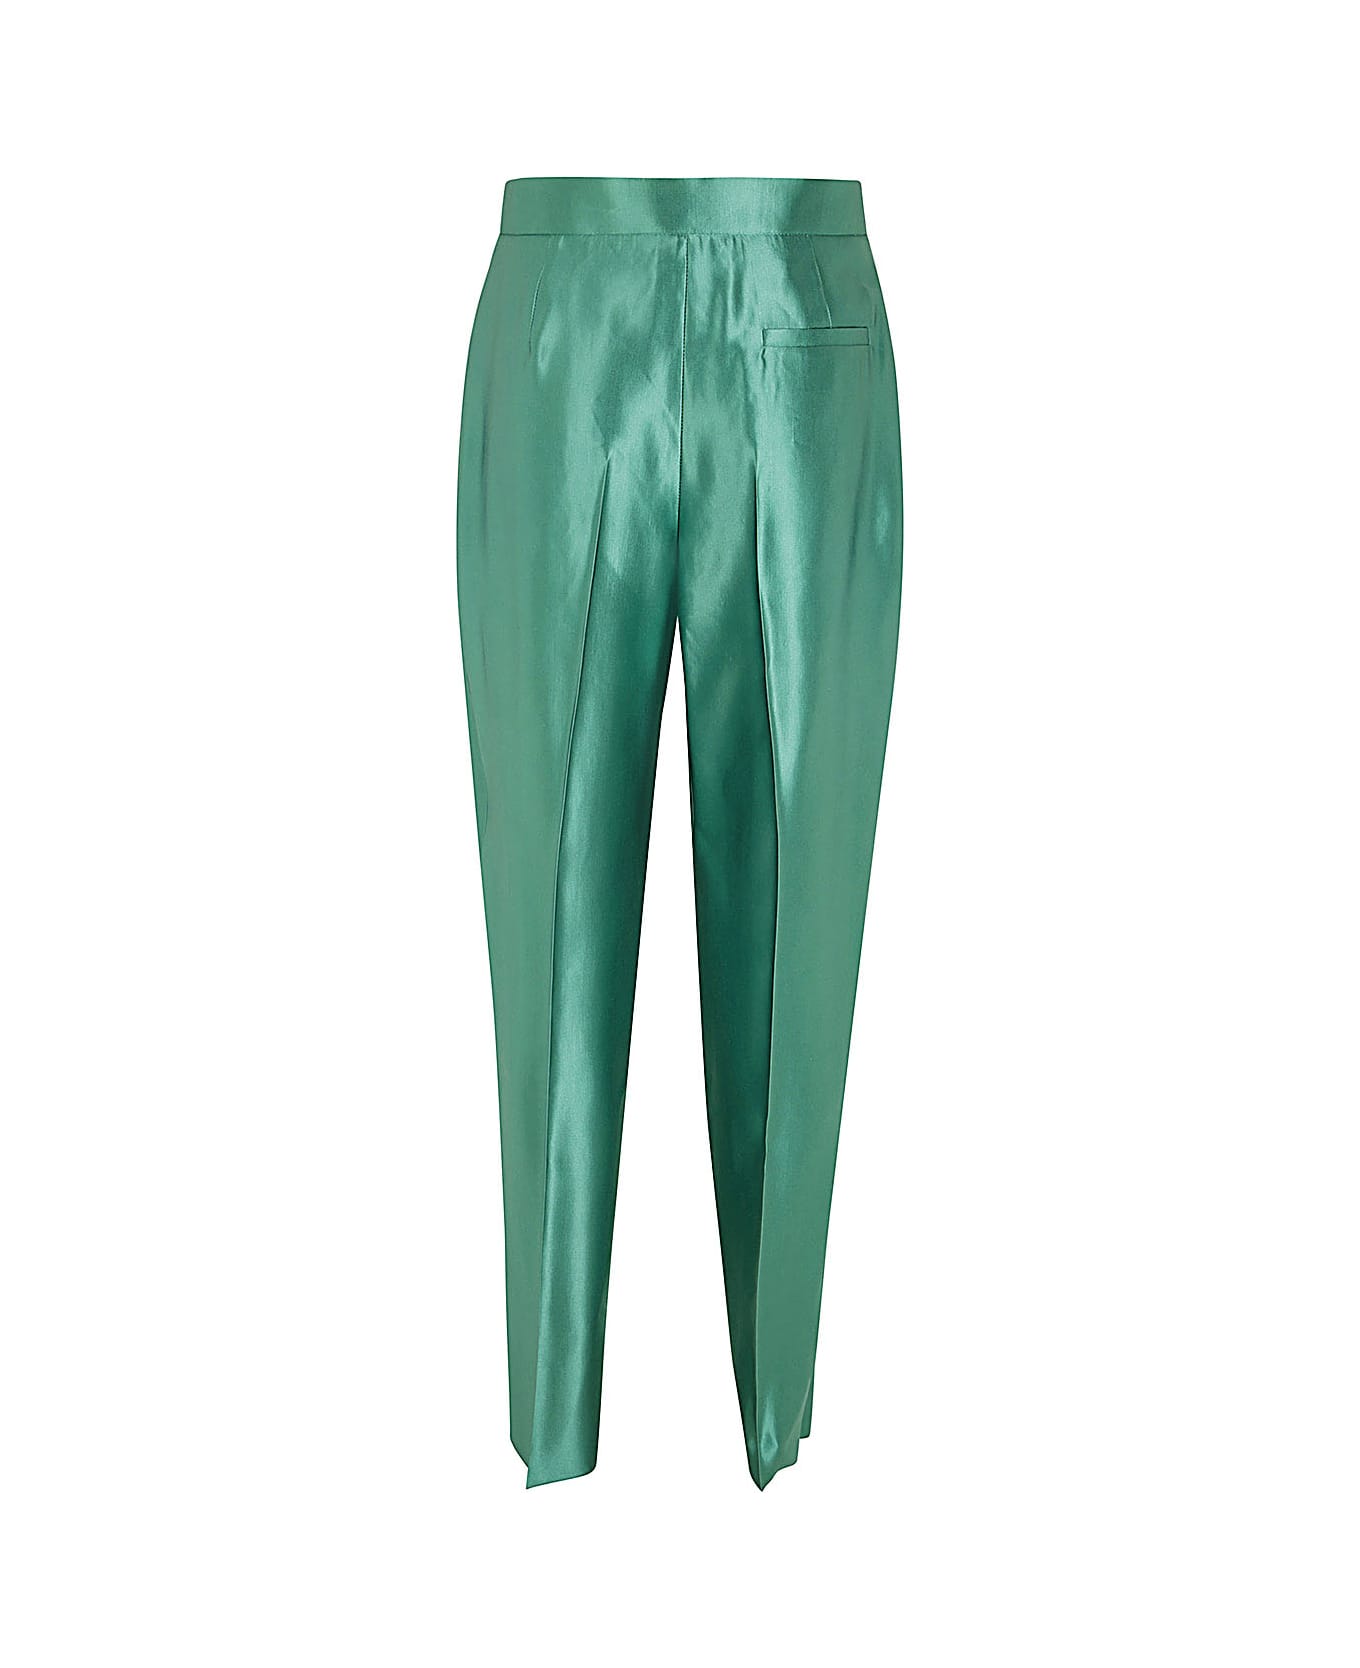 Giorgio Armani Polished Double Pences Pants - Pr Green